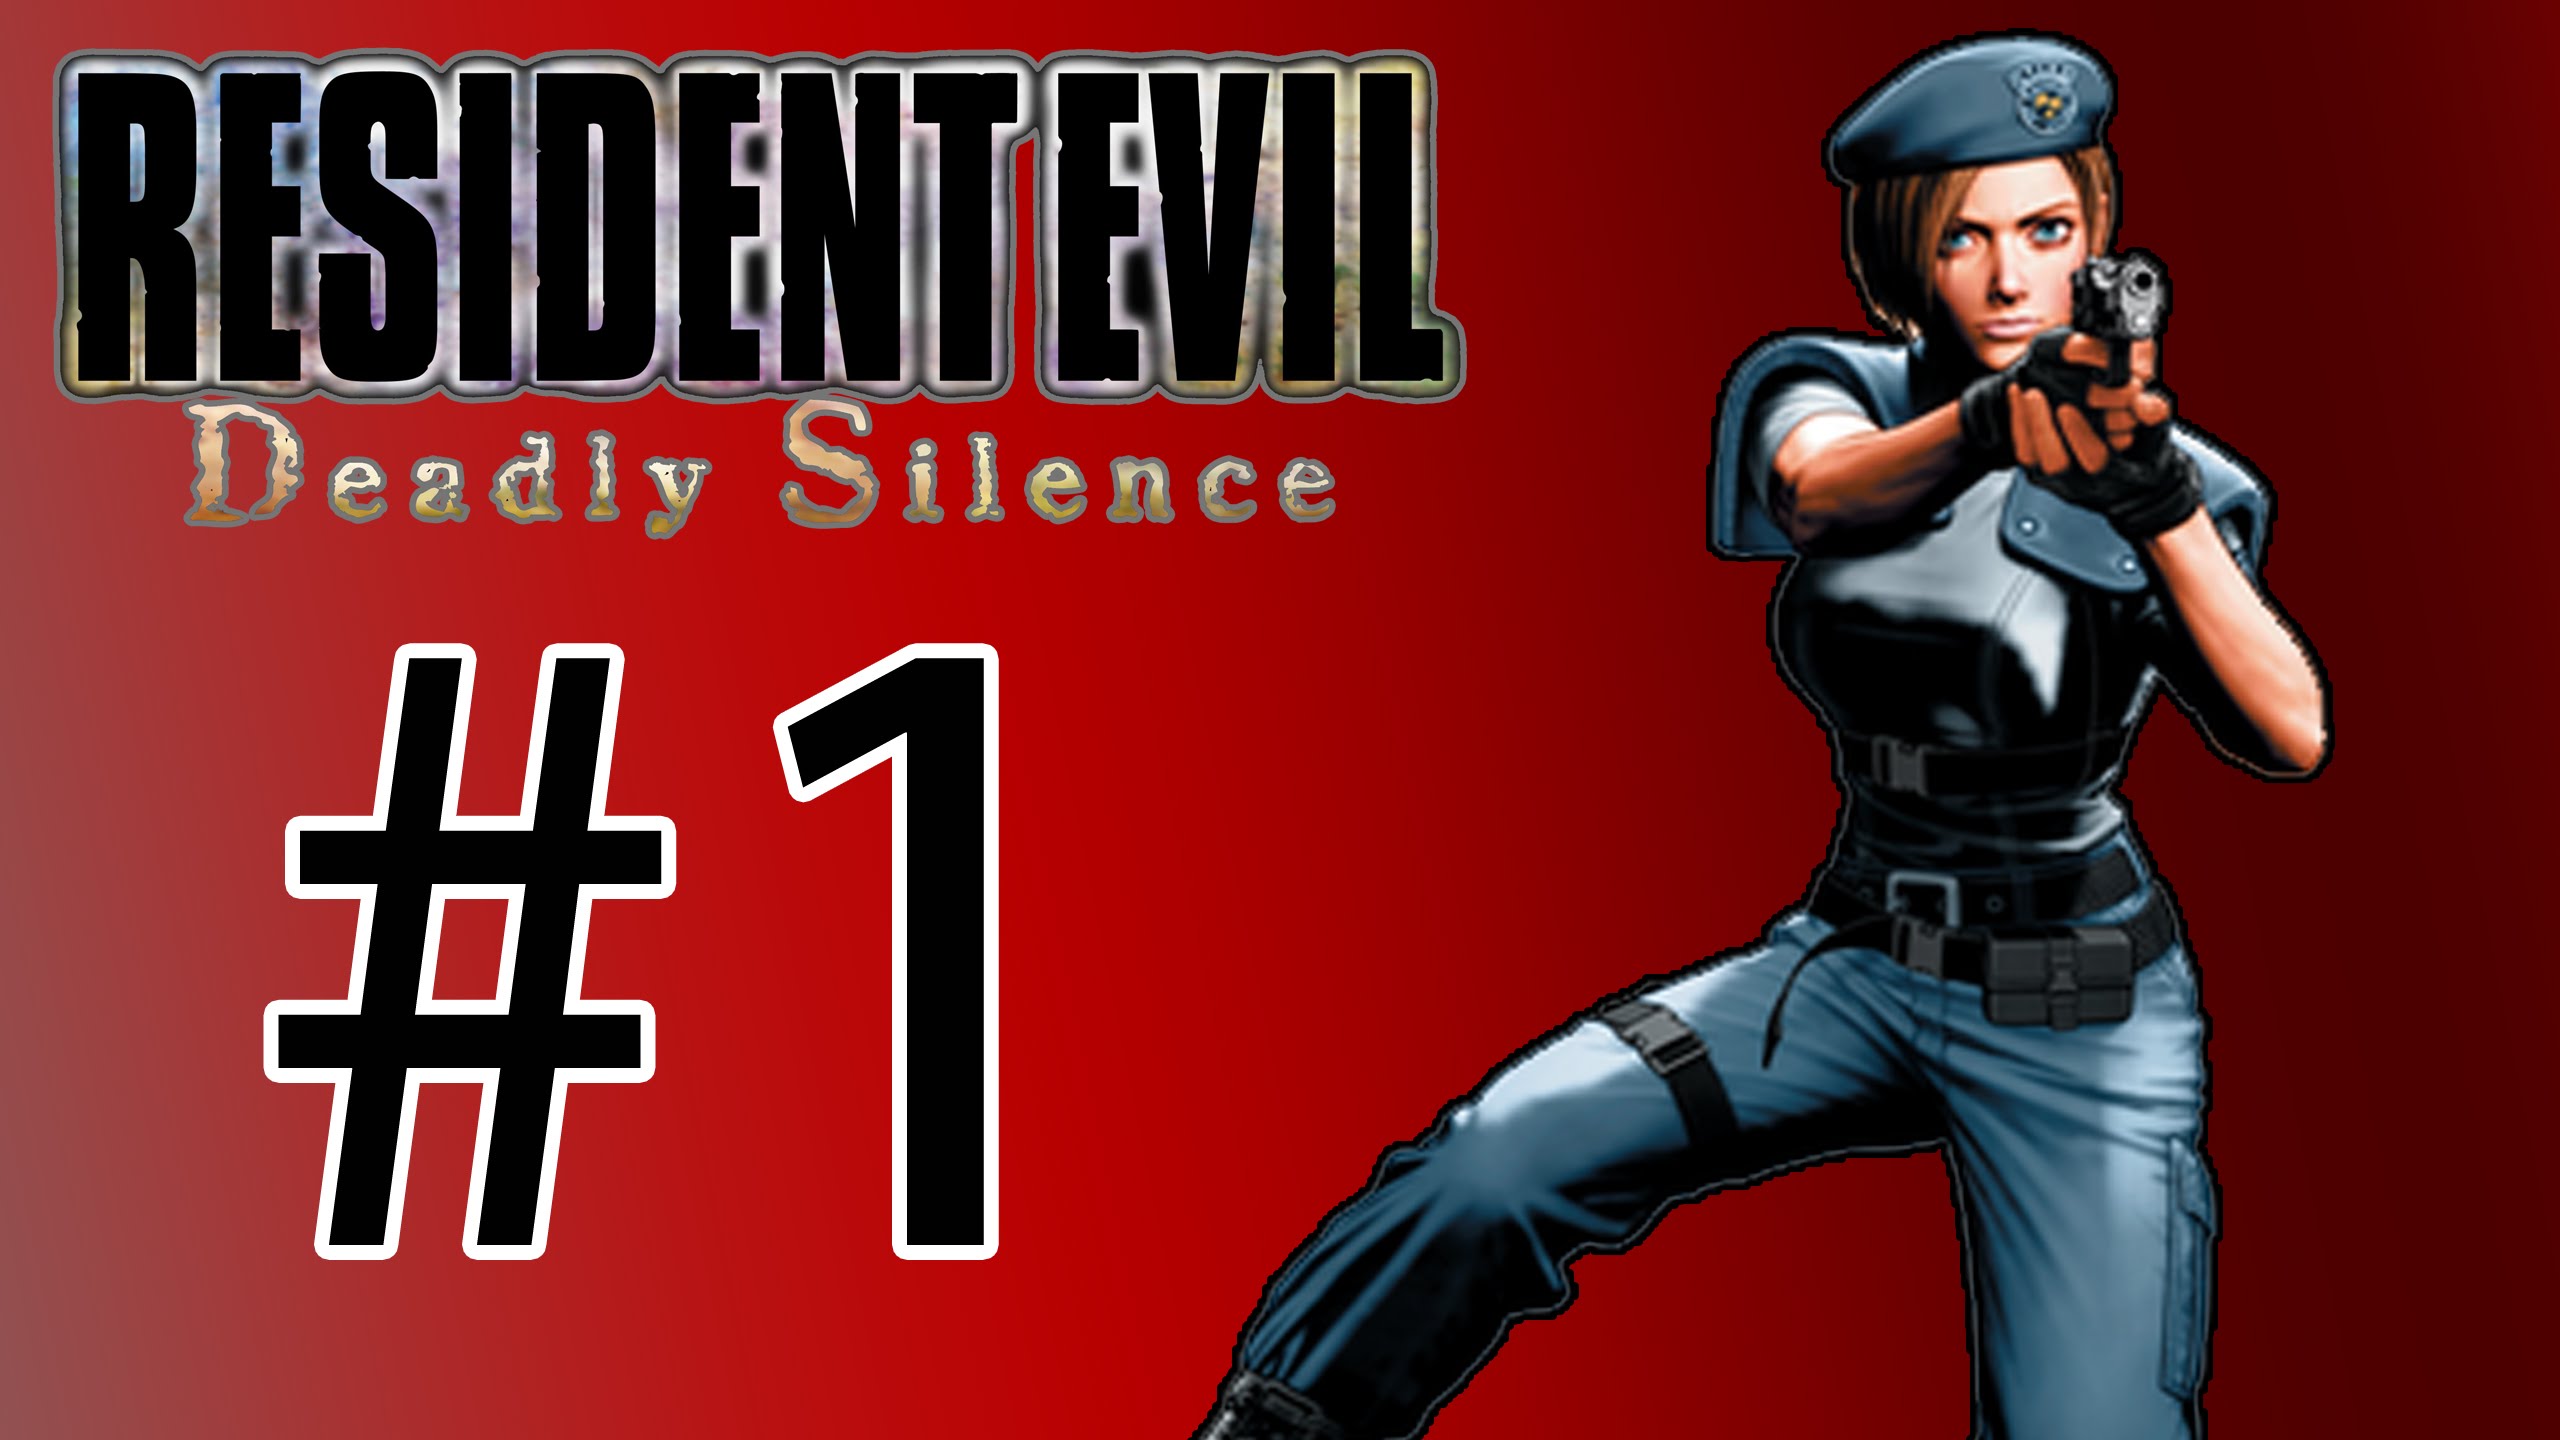 Resident Evil: Deadly Silence #15